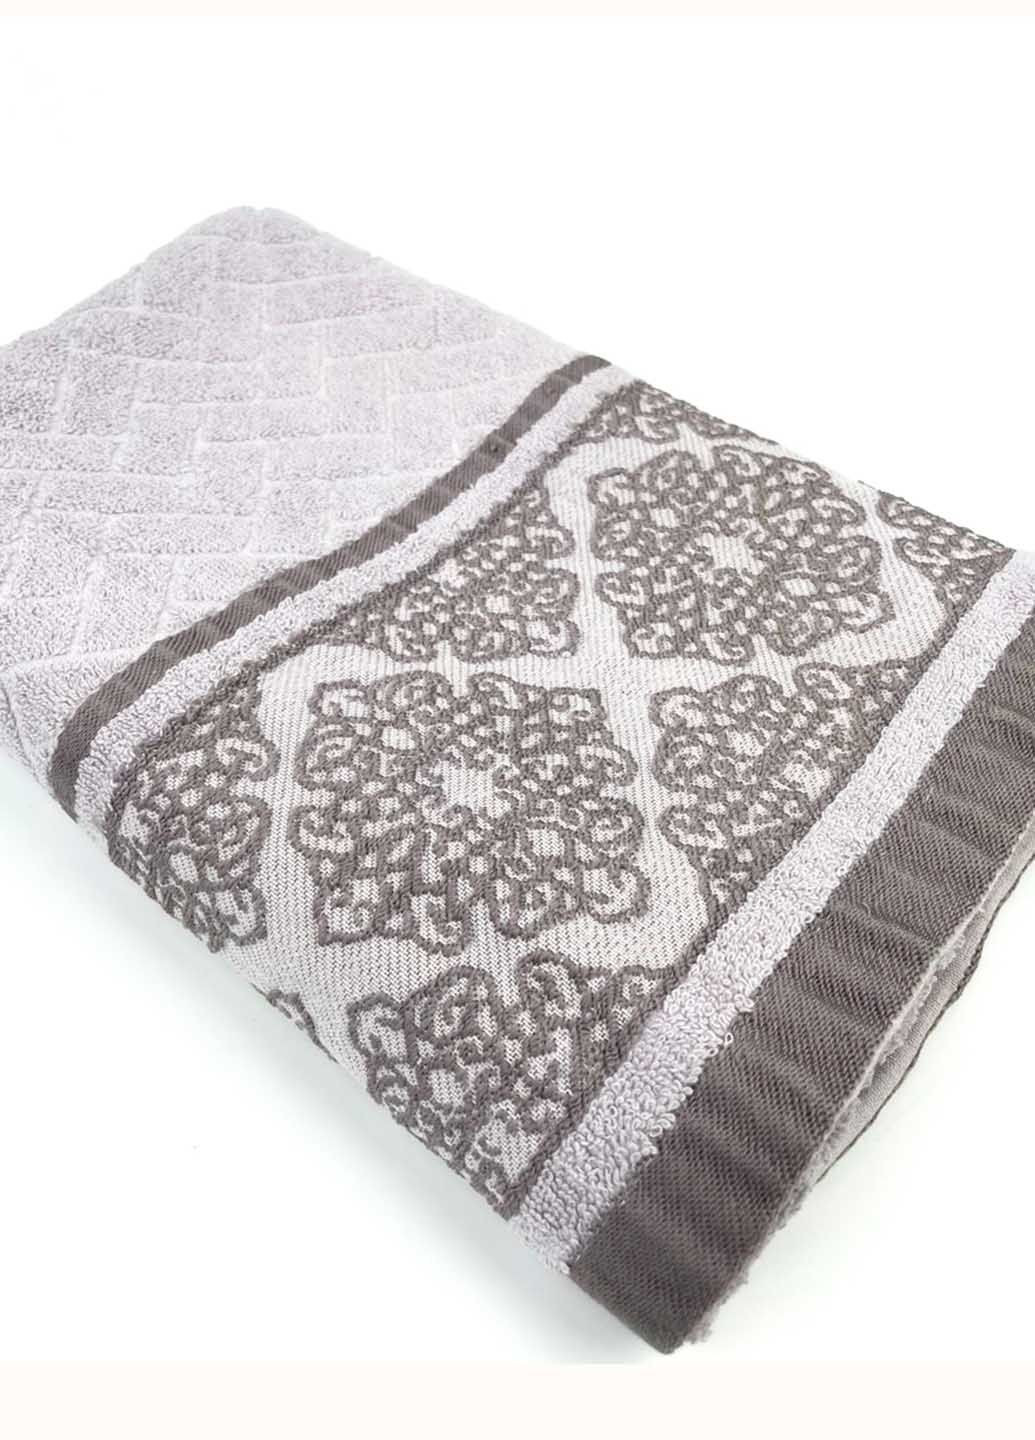 Homedec полотенце лицевое махровое 100х50 см абстрактный серо-бежевый производство - Турция